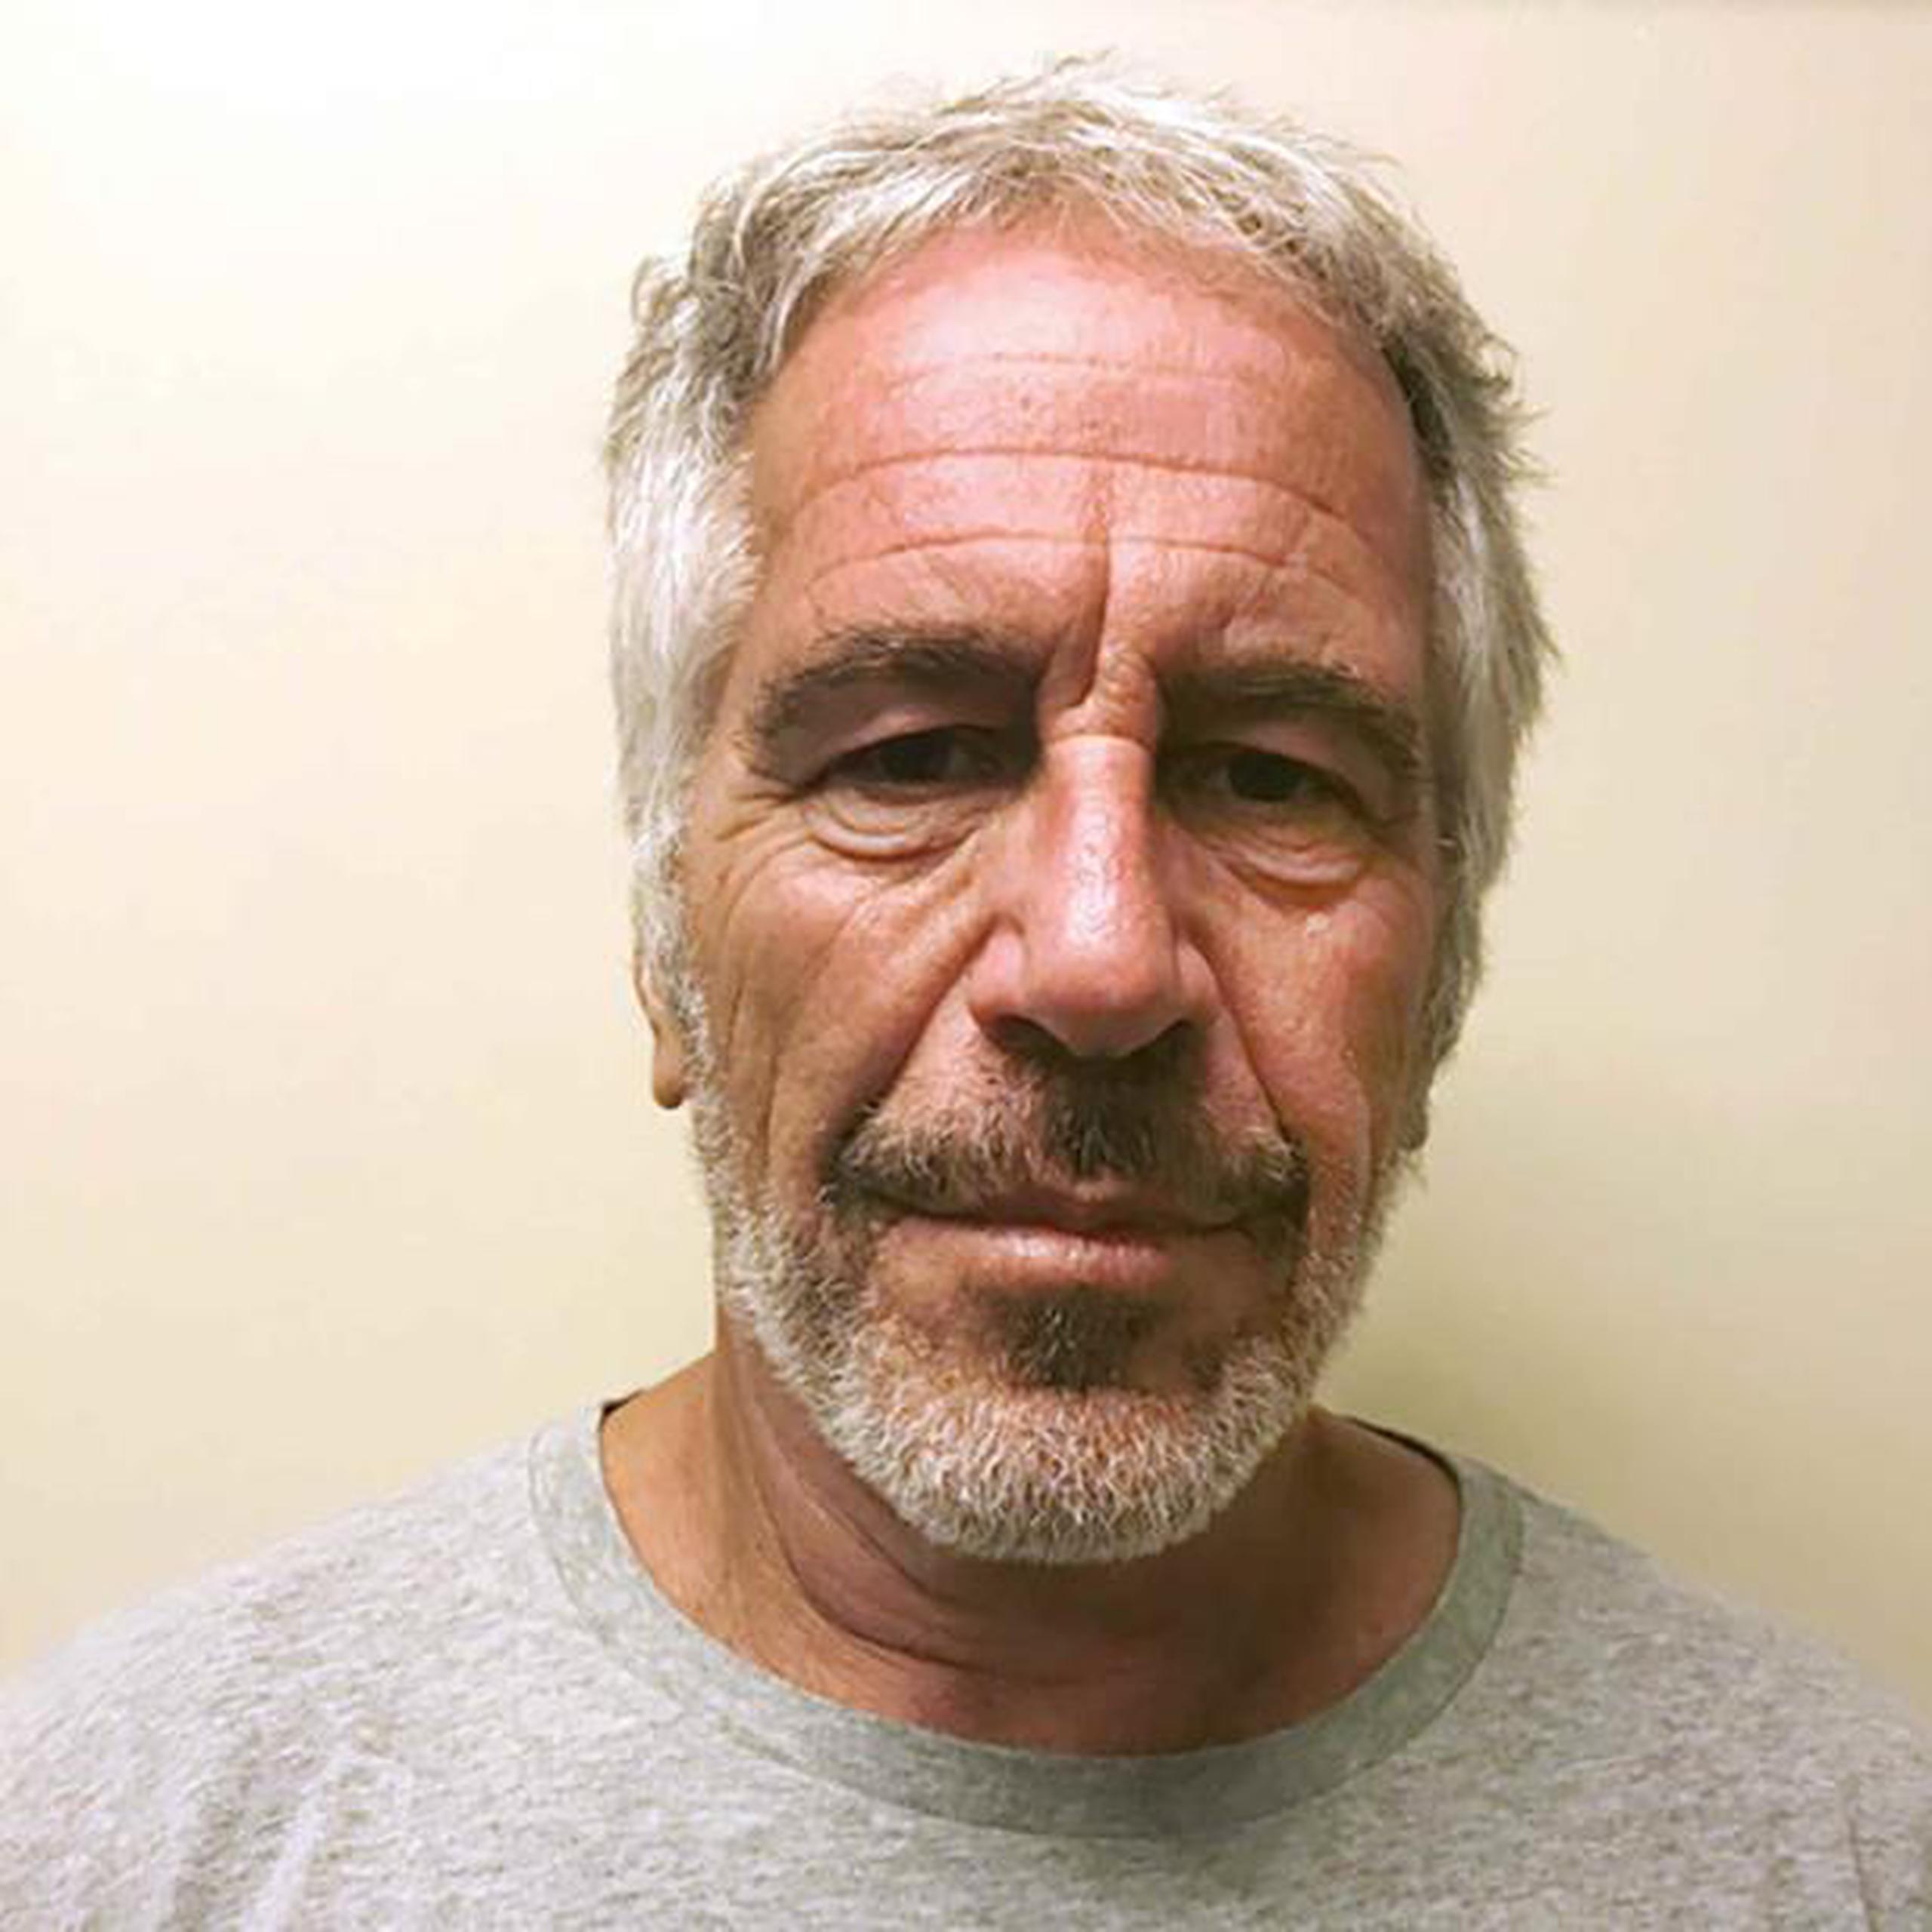 El domingo se le realizó una autopsia a Epstein, pero no se han divulgado los resultados. El director del departamento forense ha dicho que su personal aguarda más información. (AP)